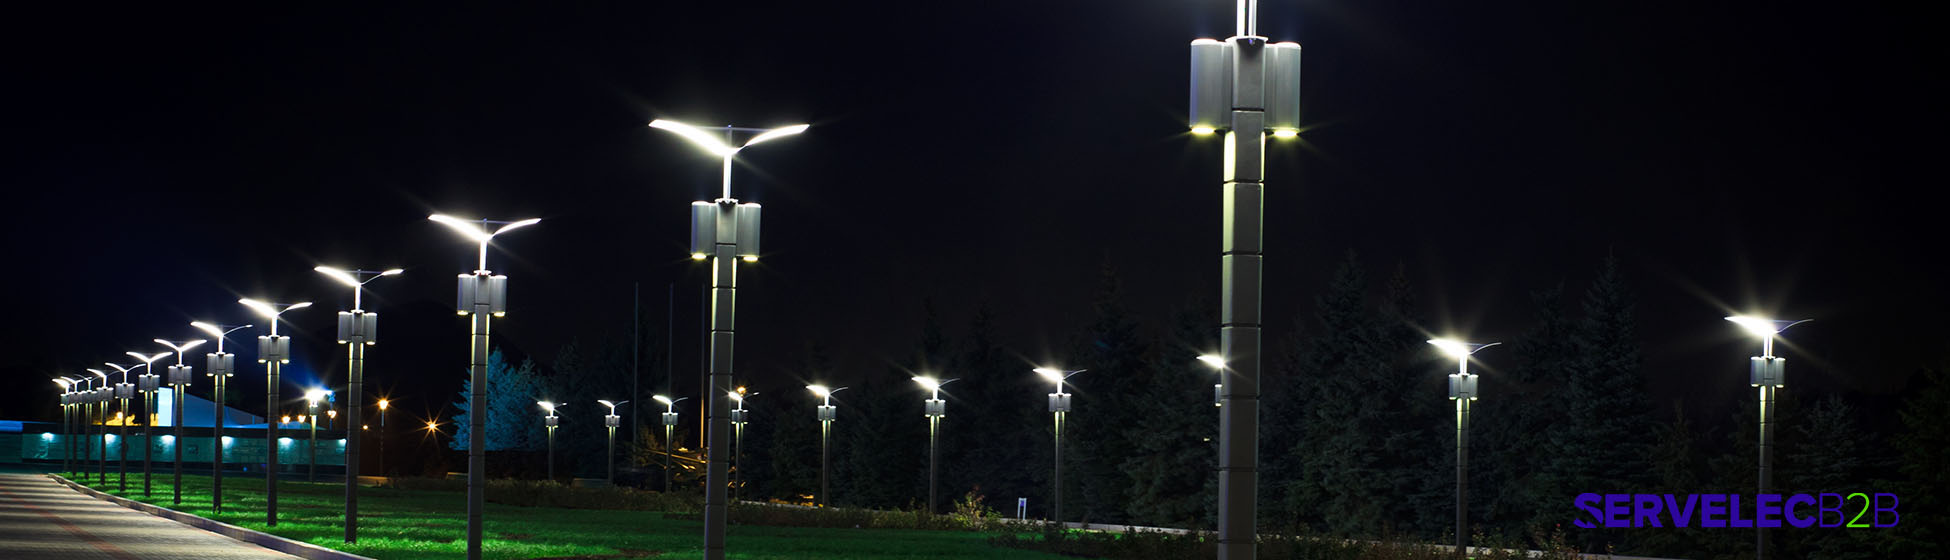 Eclairage public led solaire